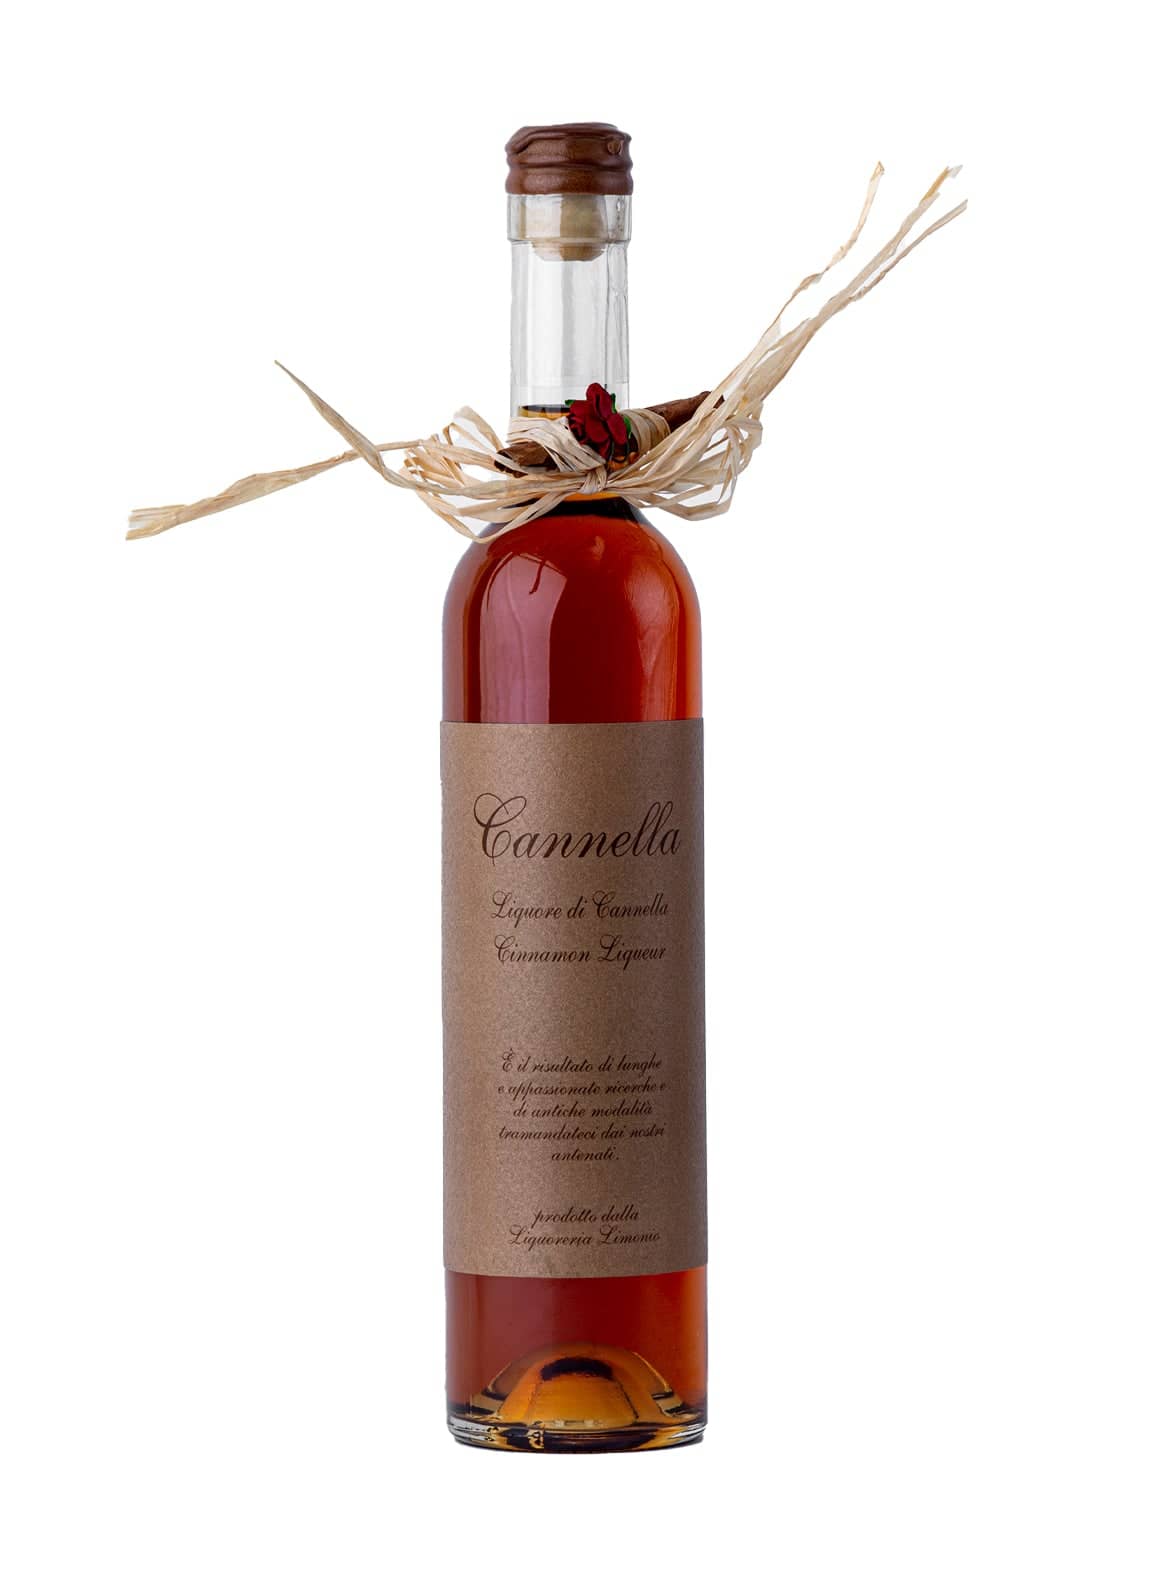 Limonio Cannella Cinnamon liqueur 32% 500ml | Liqueurs | Shop online at Spirits of France